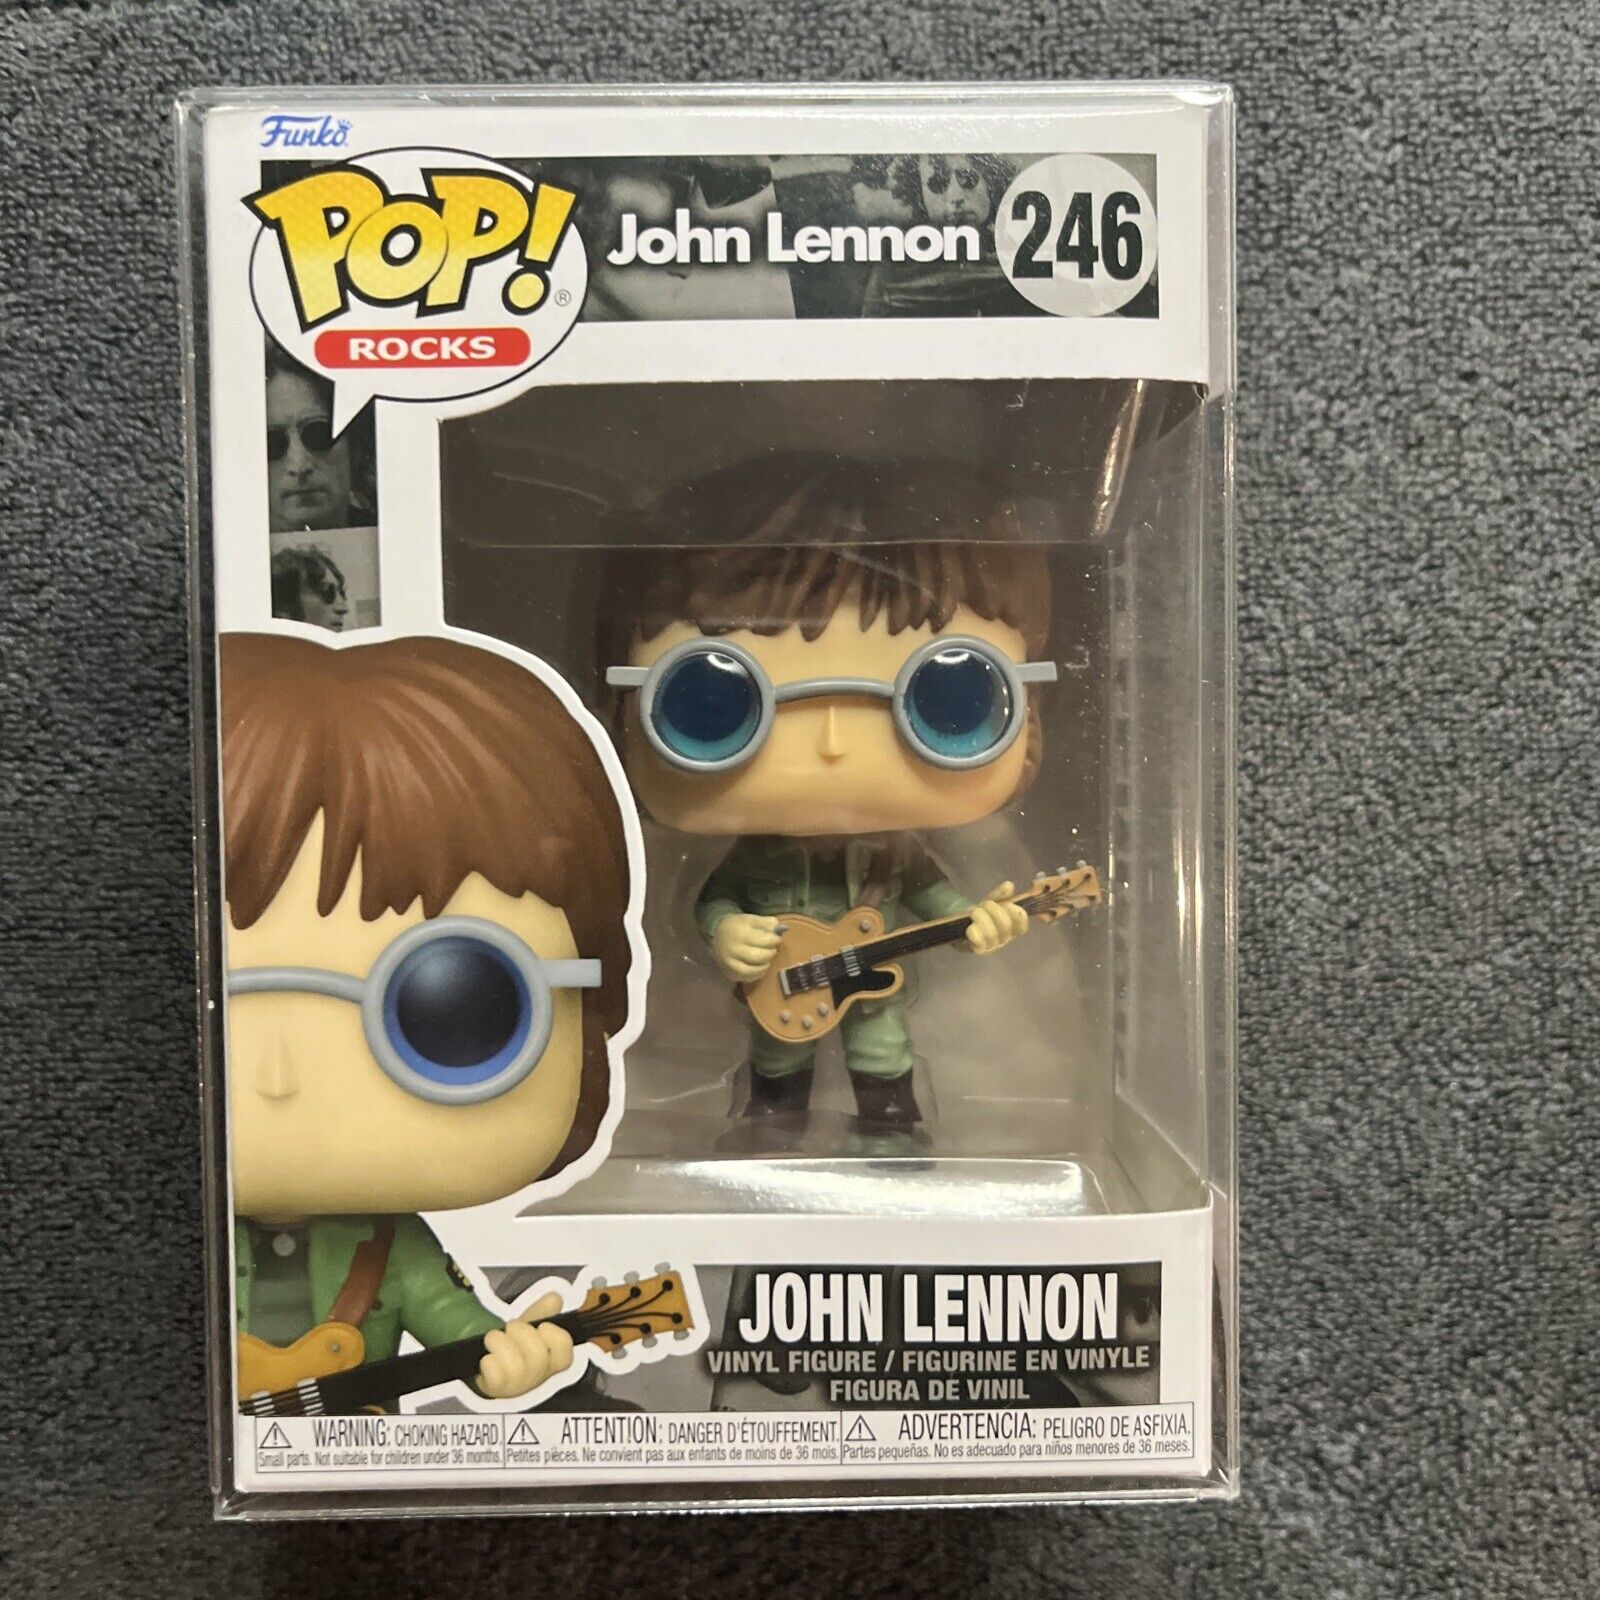 Funko Pop Rocks John Lennon 246 - New In Box Protector